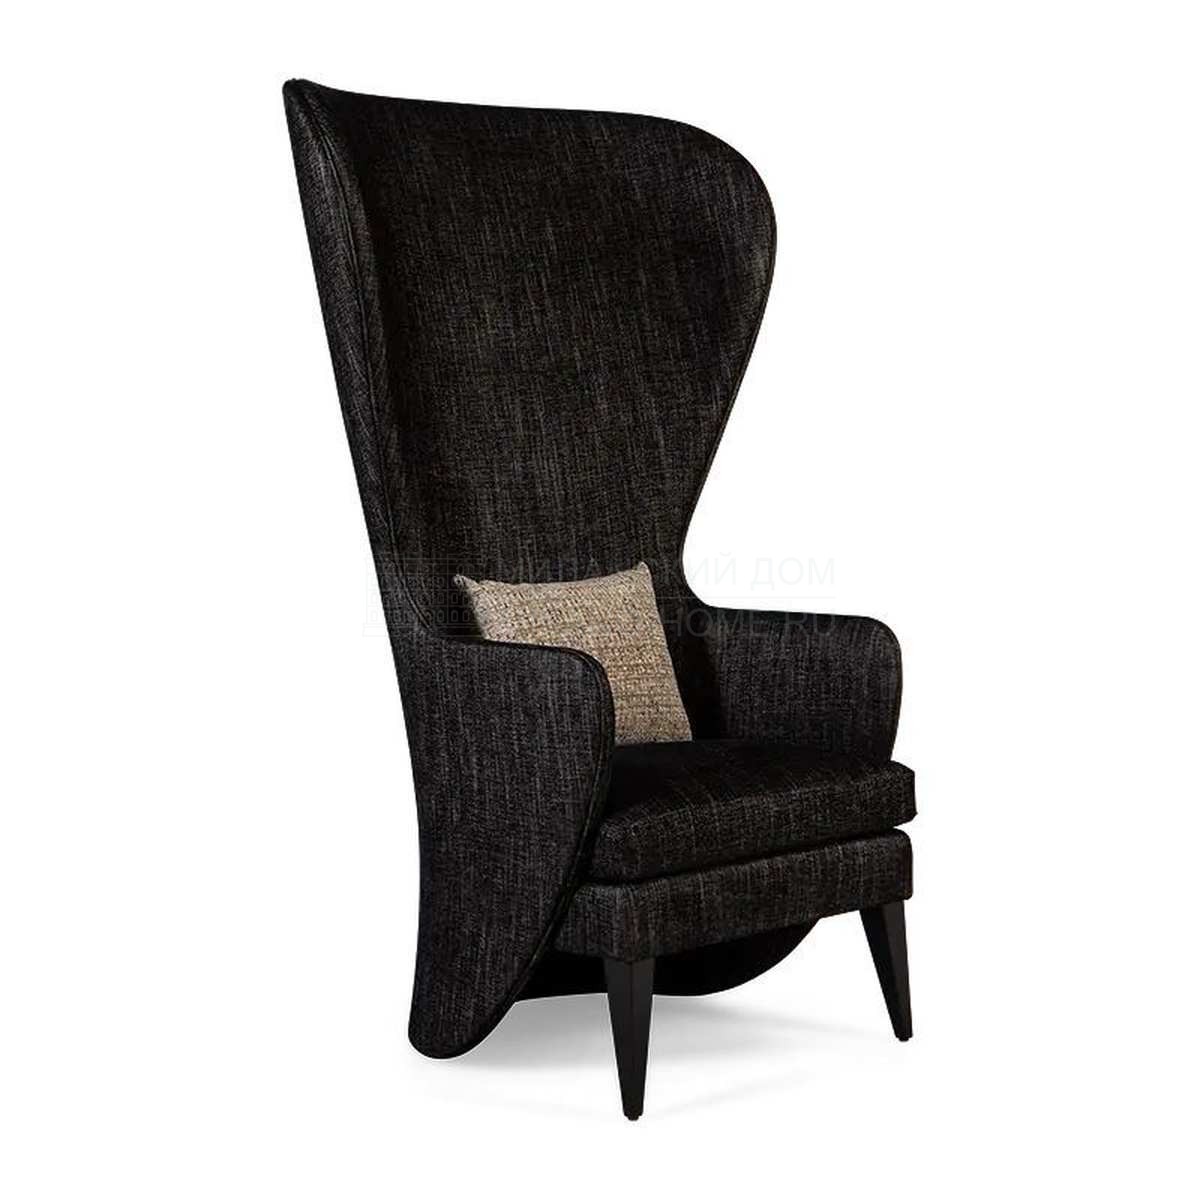 Каминное кресло Visconti sedia armchair  из США фабрики CHRISTOPHER GUY